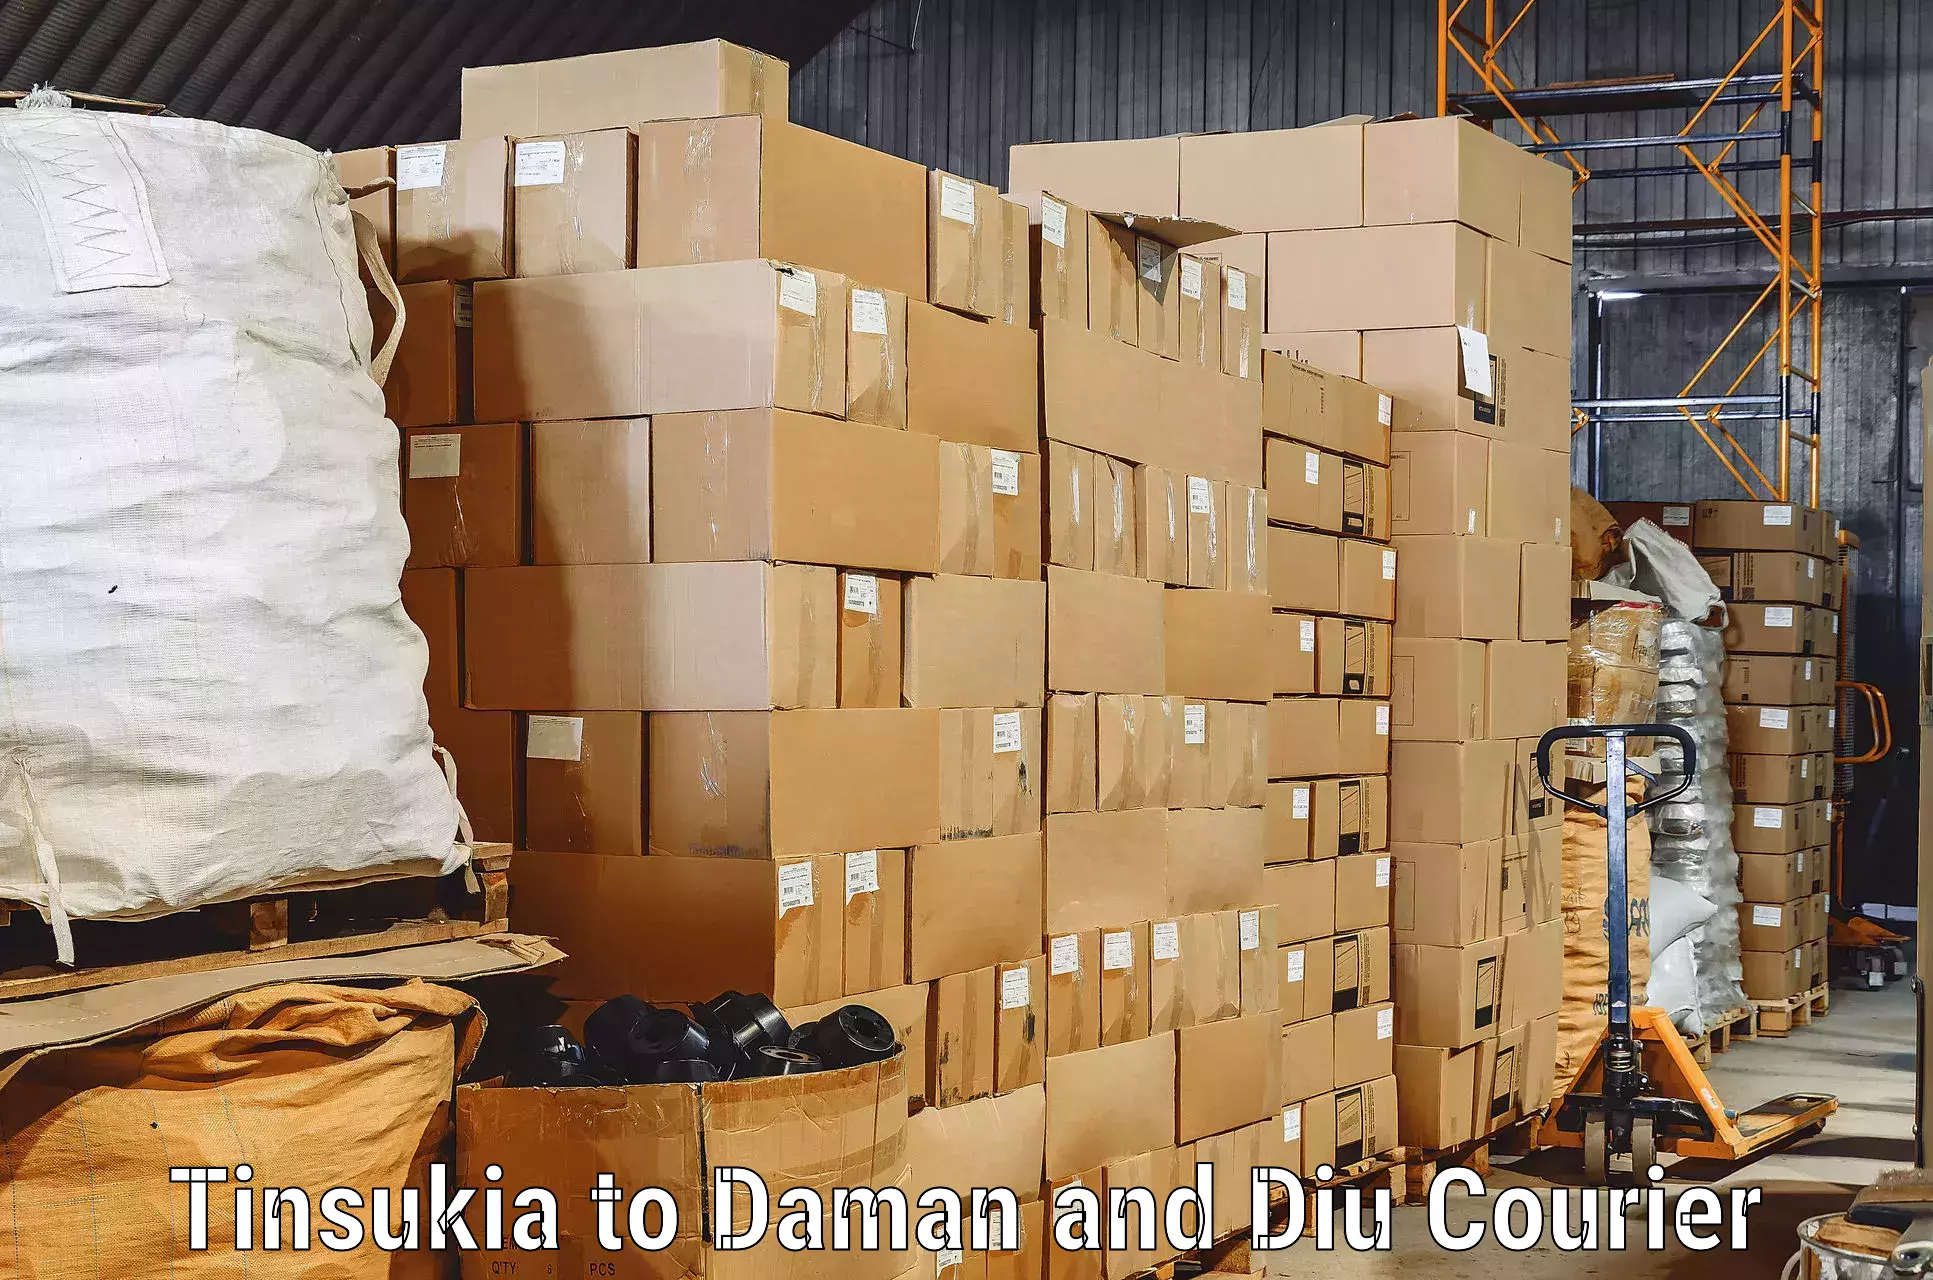 Furniture moving experts Tinsukia to Diu